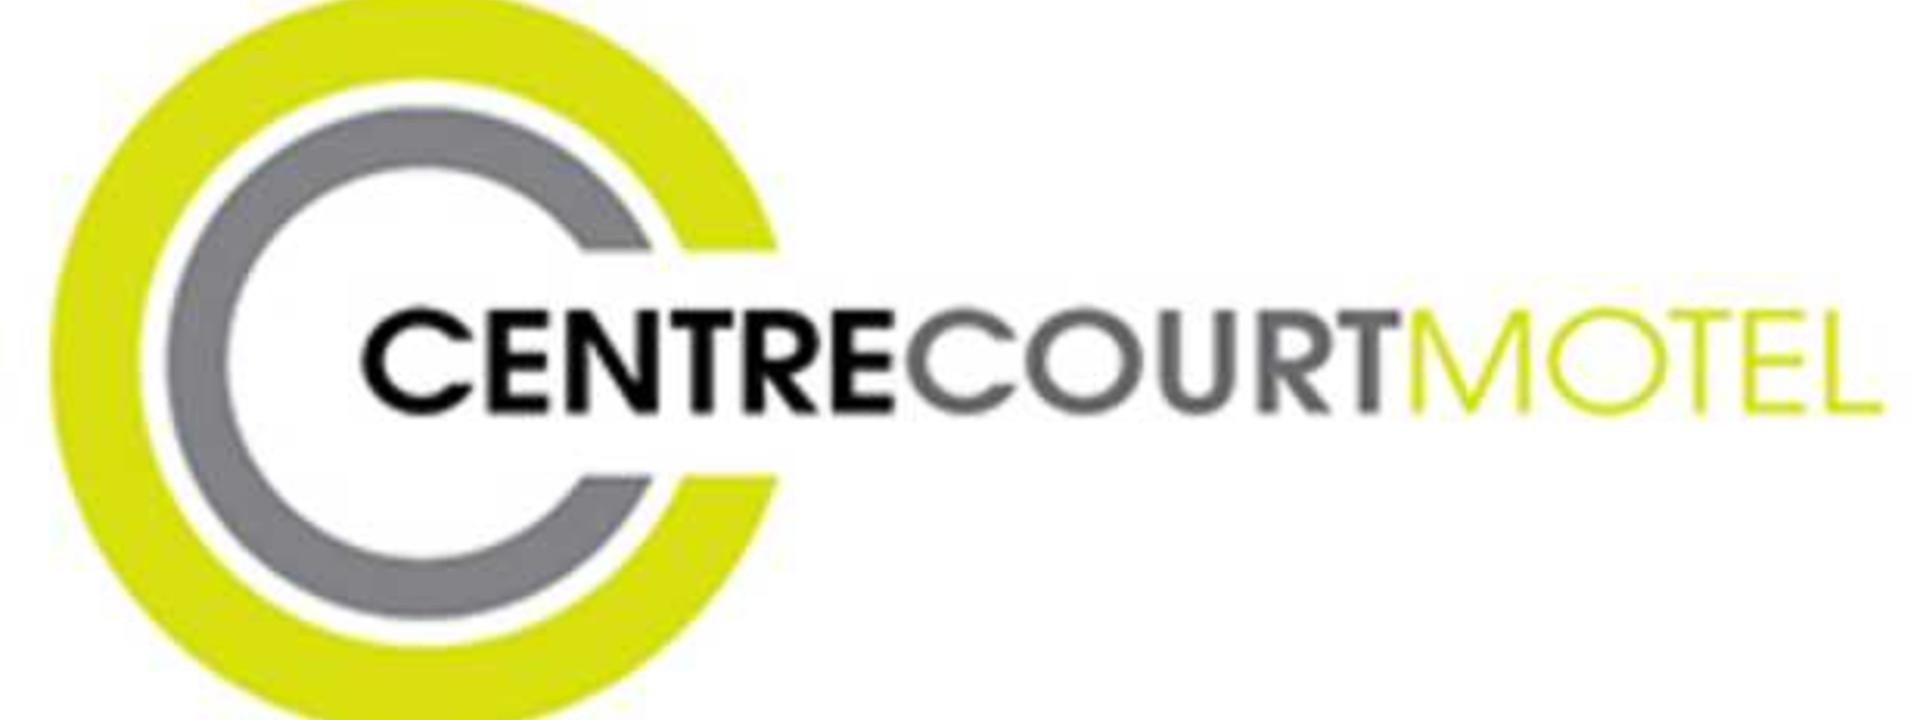 logo_centrecourt.jpg